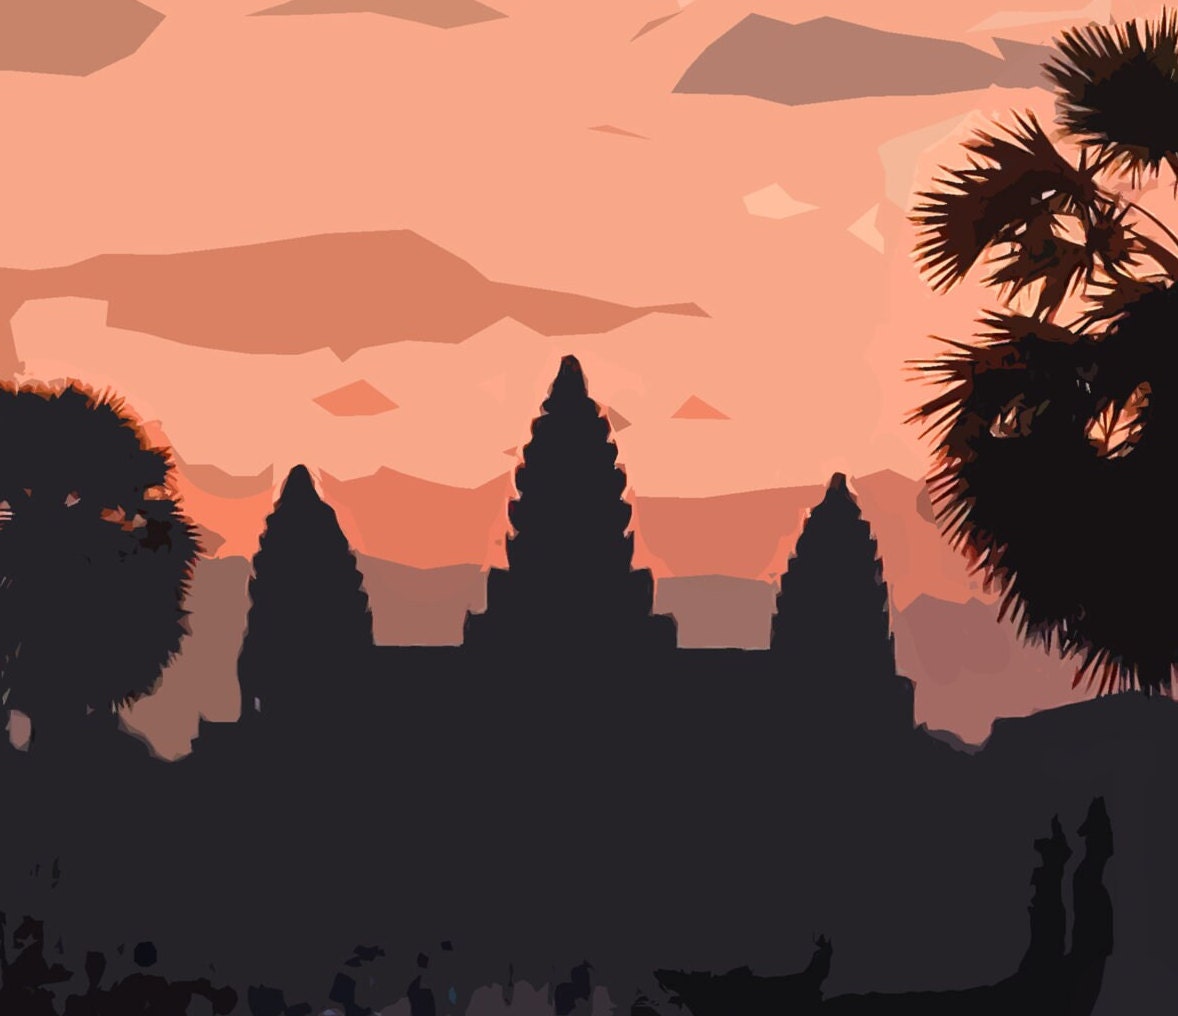 Angkor Wat Travel Poster